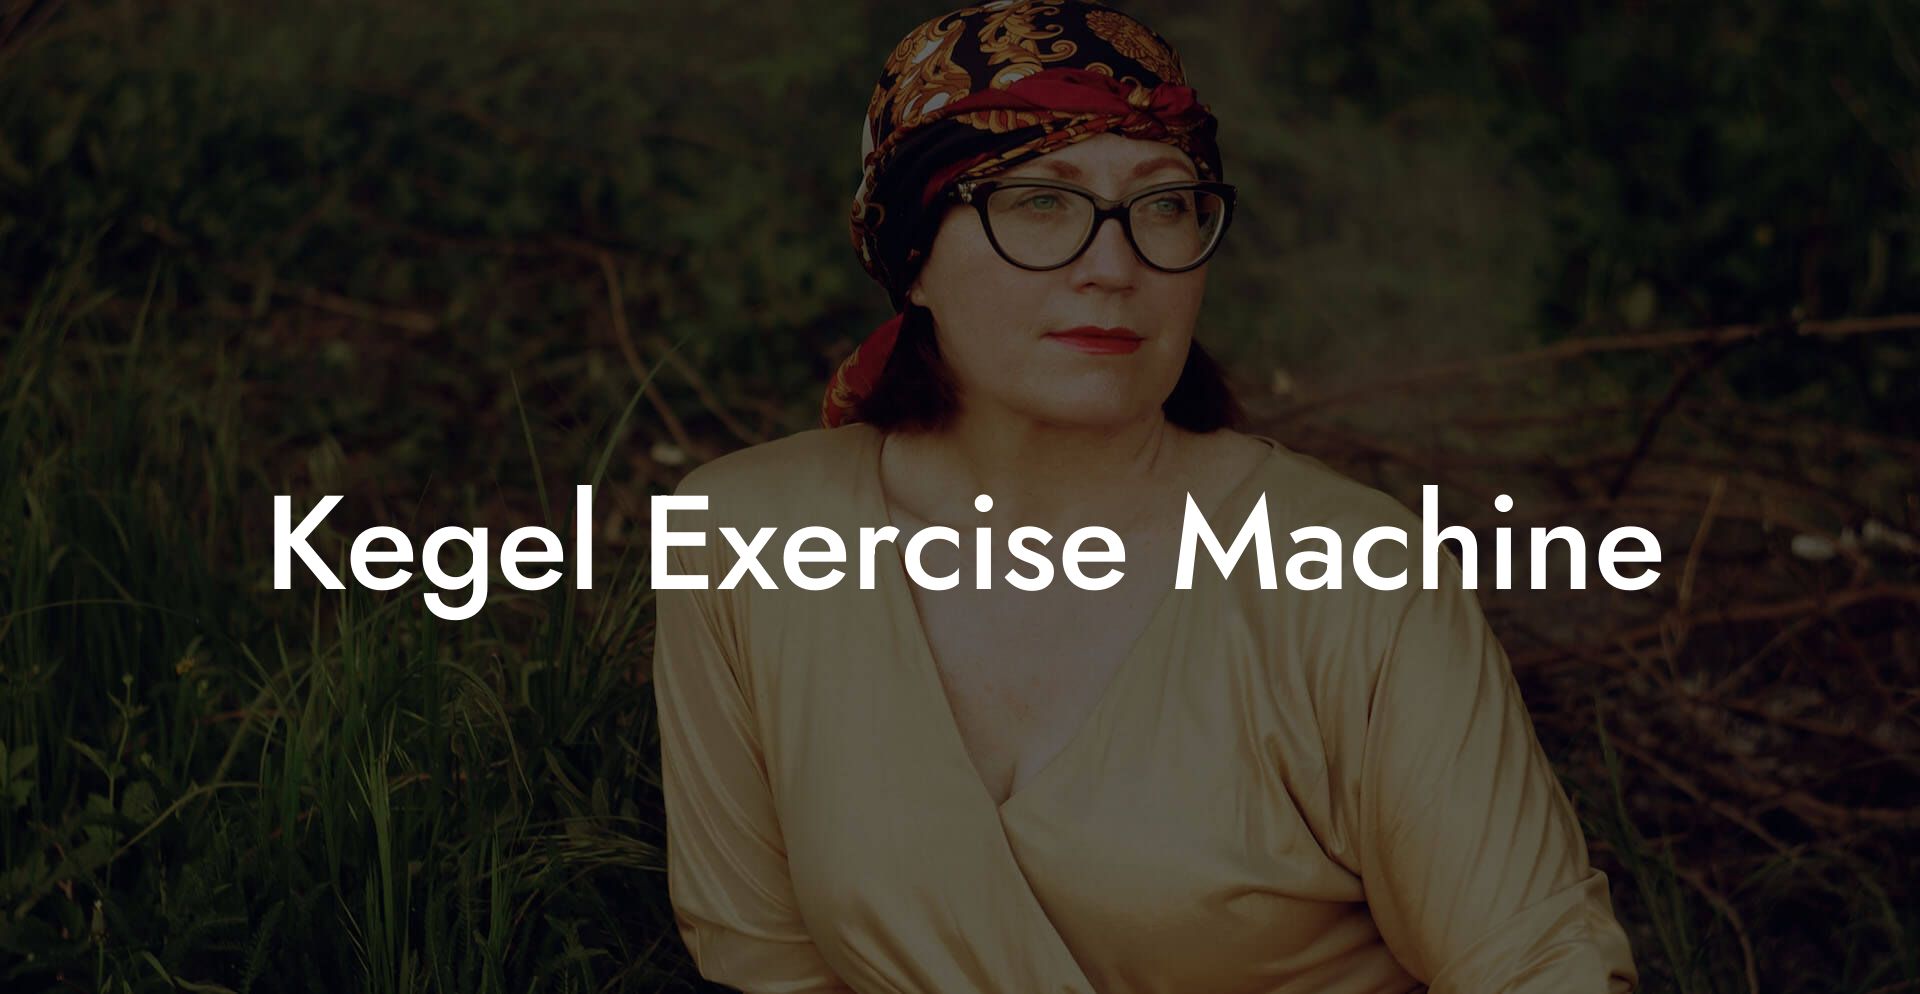 Kegel Exercise Machine